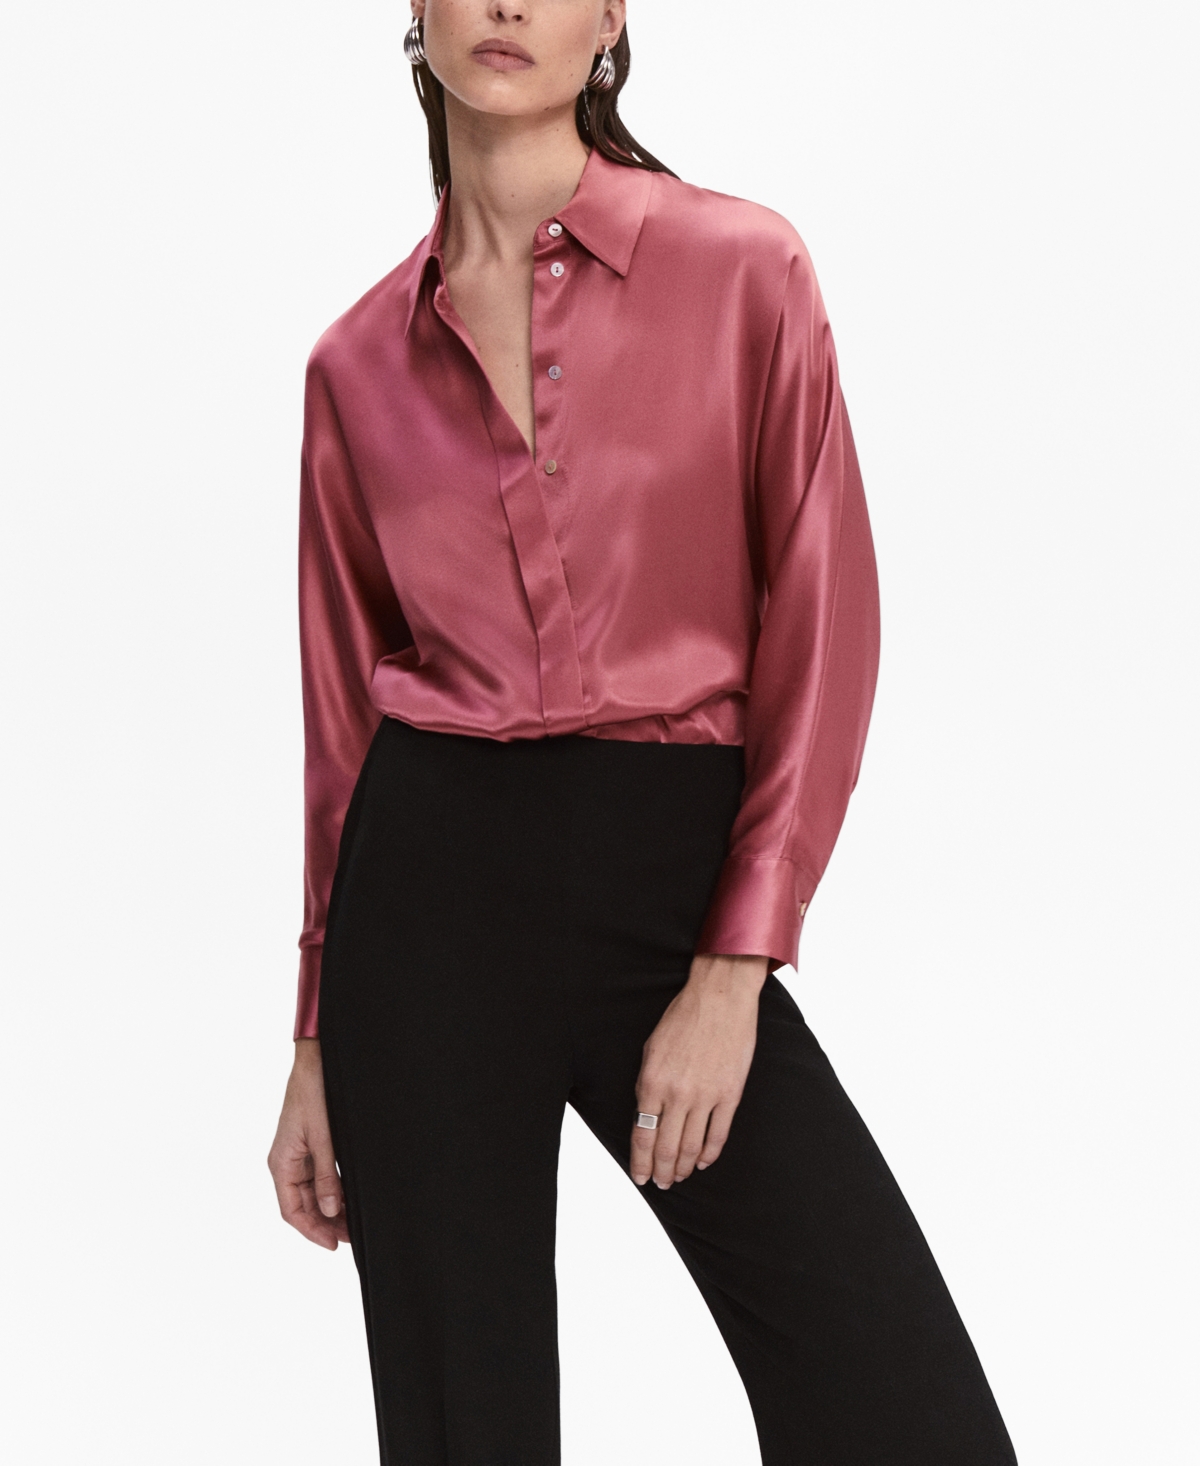 Zara - Geometric Print Satin Effect Shirt - Black Ecru - Women